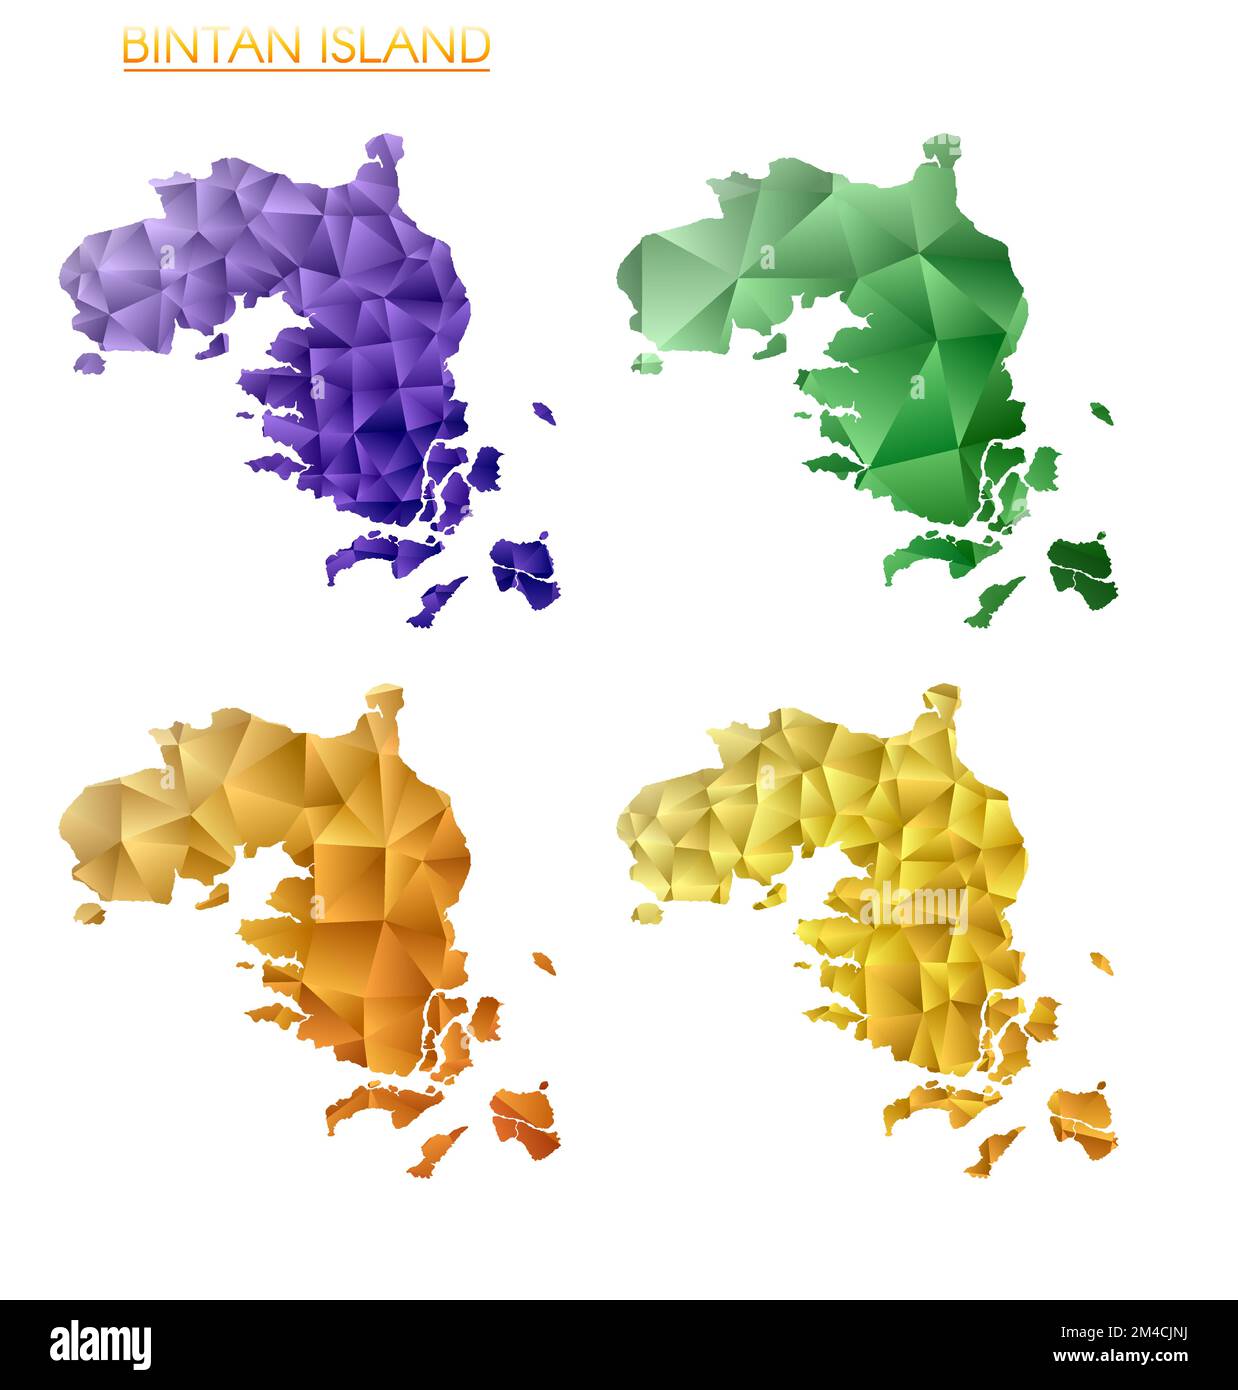 Satz von polygonalen Vektorkarten der Insel Bintan. Helle Gradientenkarte der Insel im niedrigen Poly-Stil. Mehrfarbige Karte der Insel Bintan im geometrischen Stil für Stock Vektor